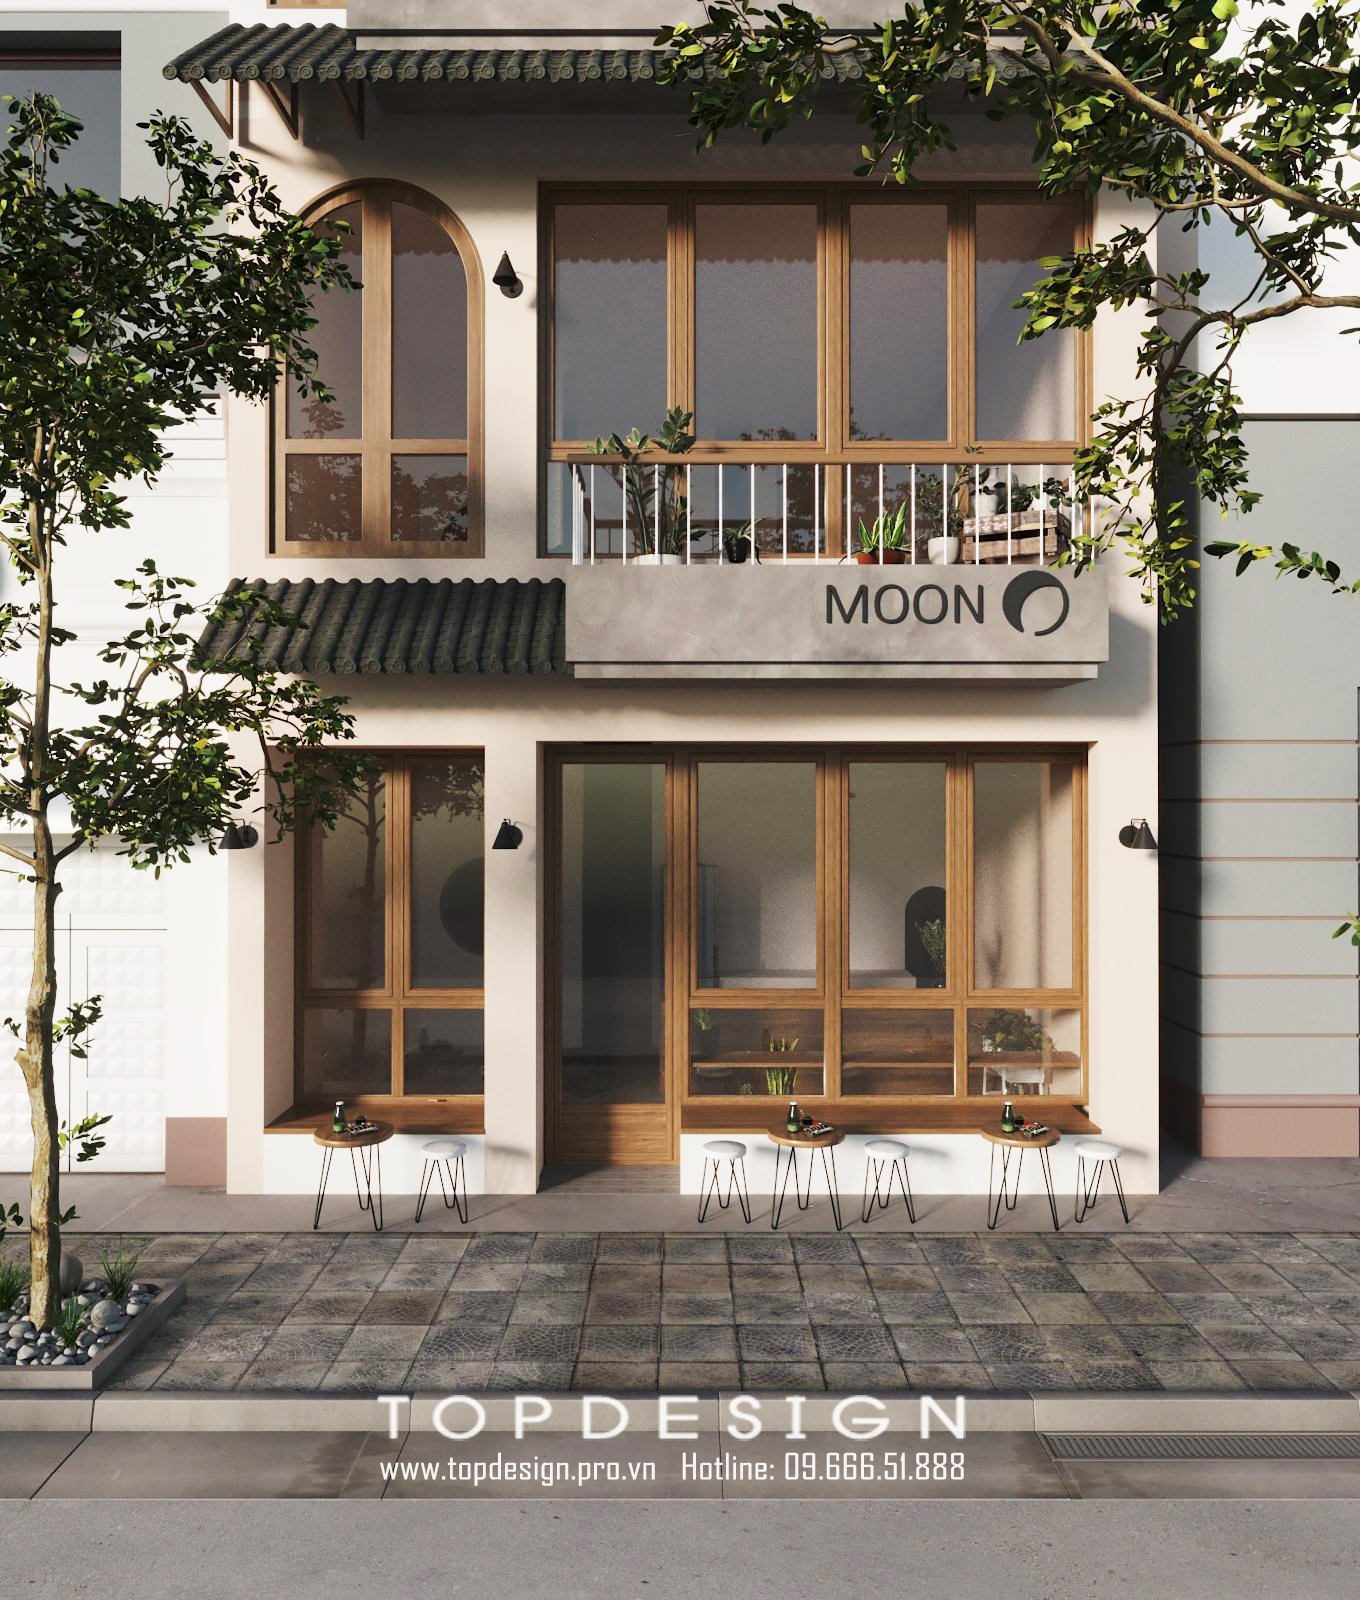 tư vấn thiết kế kiến trúc quán cà phê Moon